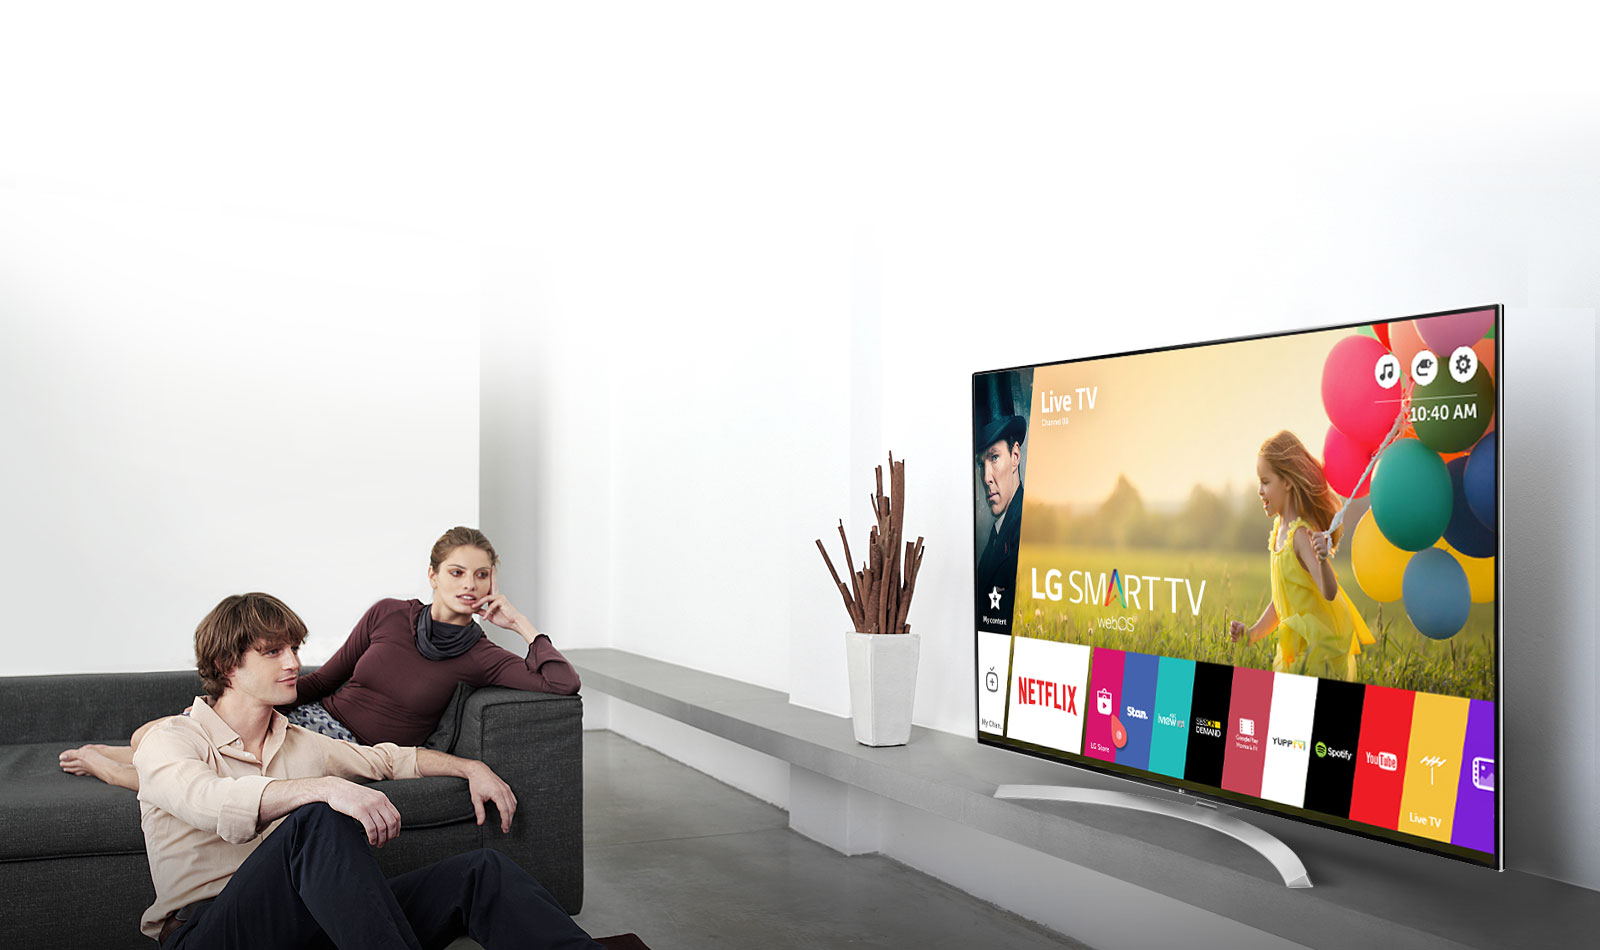 Новый телевизор видео. Телевизор LG Smart TV. Телевизор LG Smart TV 2017. Телевизор LG Smart TV banner. Реклама на телевизорах LG Smart TV.